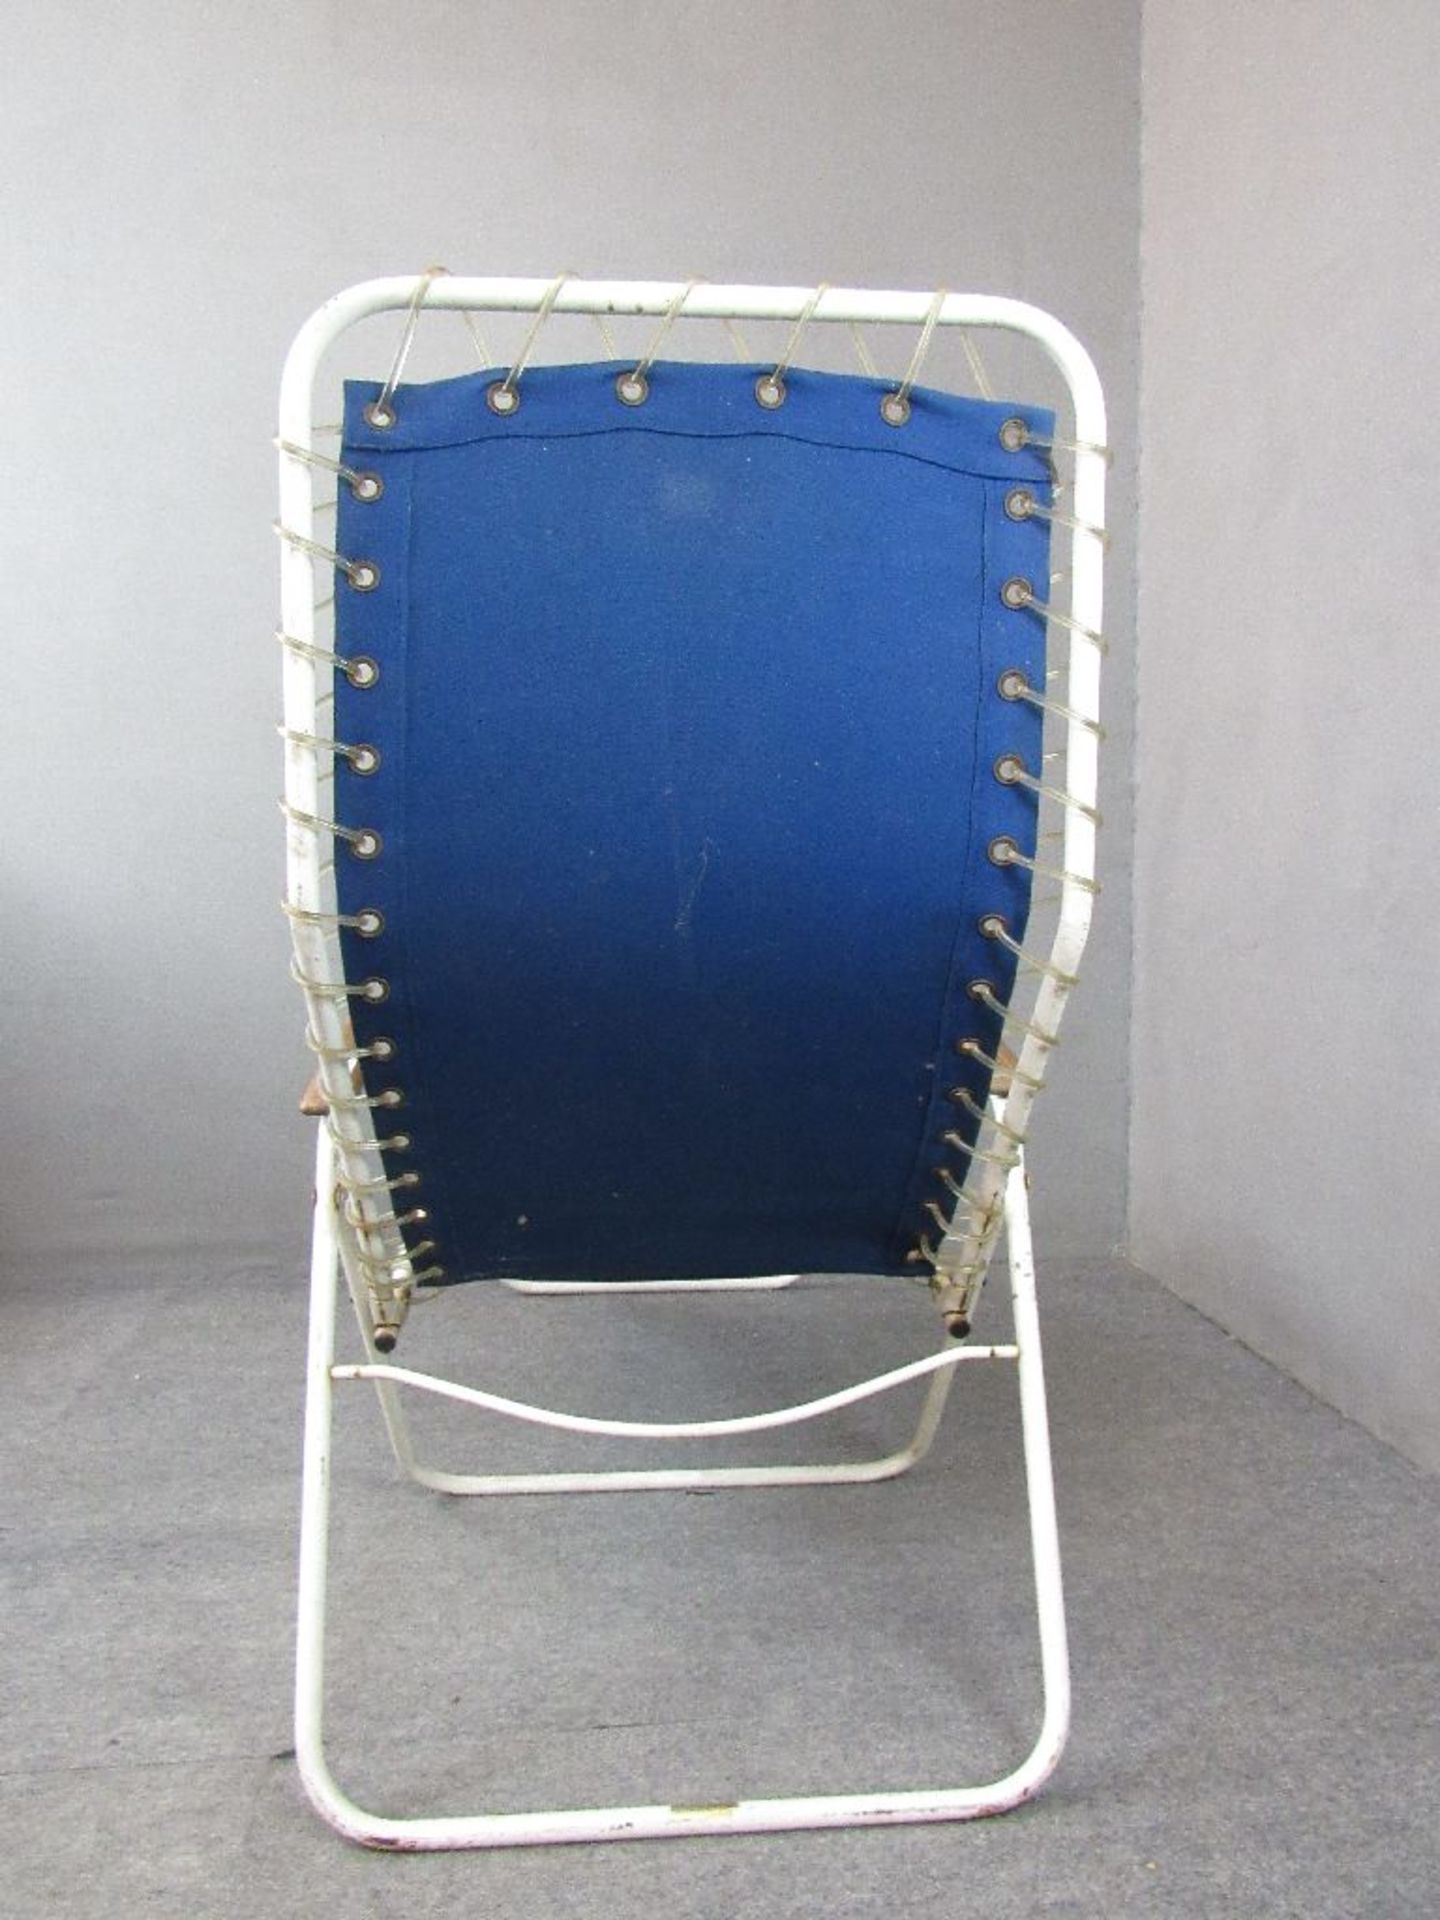 Zwei Vintage 60er Jahre Liegestühle Teak Armlehnen Made in Denmark Hersteller Homa 2 Stück blau - Image 11 of 12